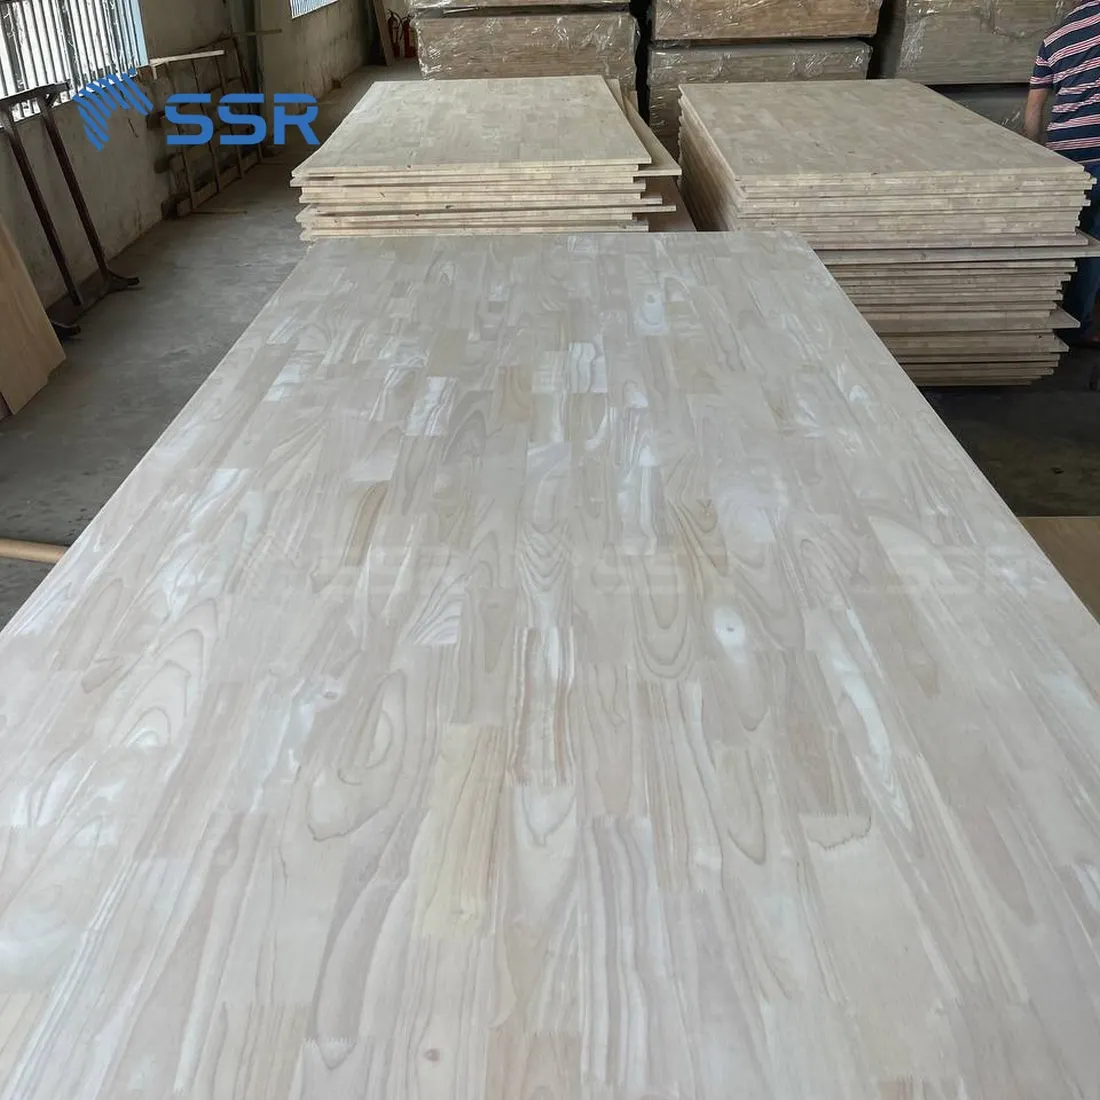 SSR VINA - Rubber Wood Finger Joint Board - 4x8 pieds douves discontinues panneau de bois planches à doigts en bois d'hévéa